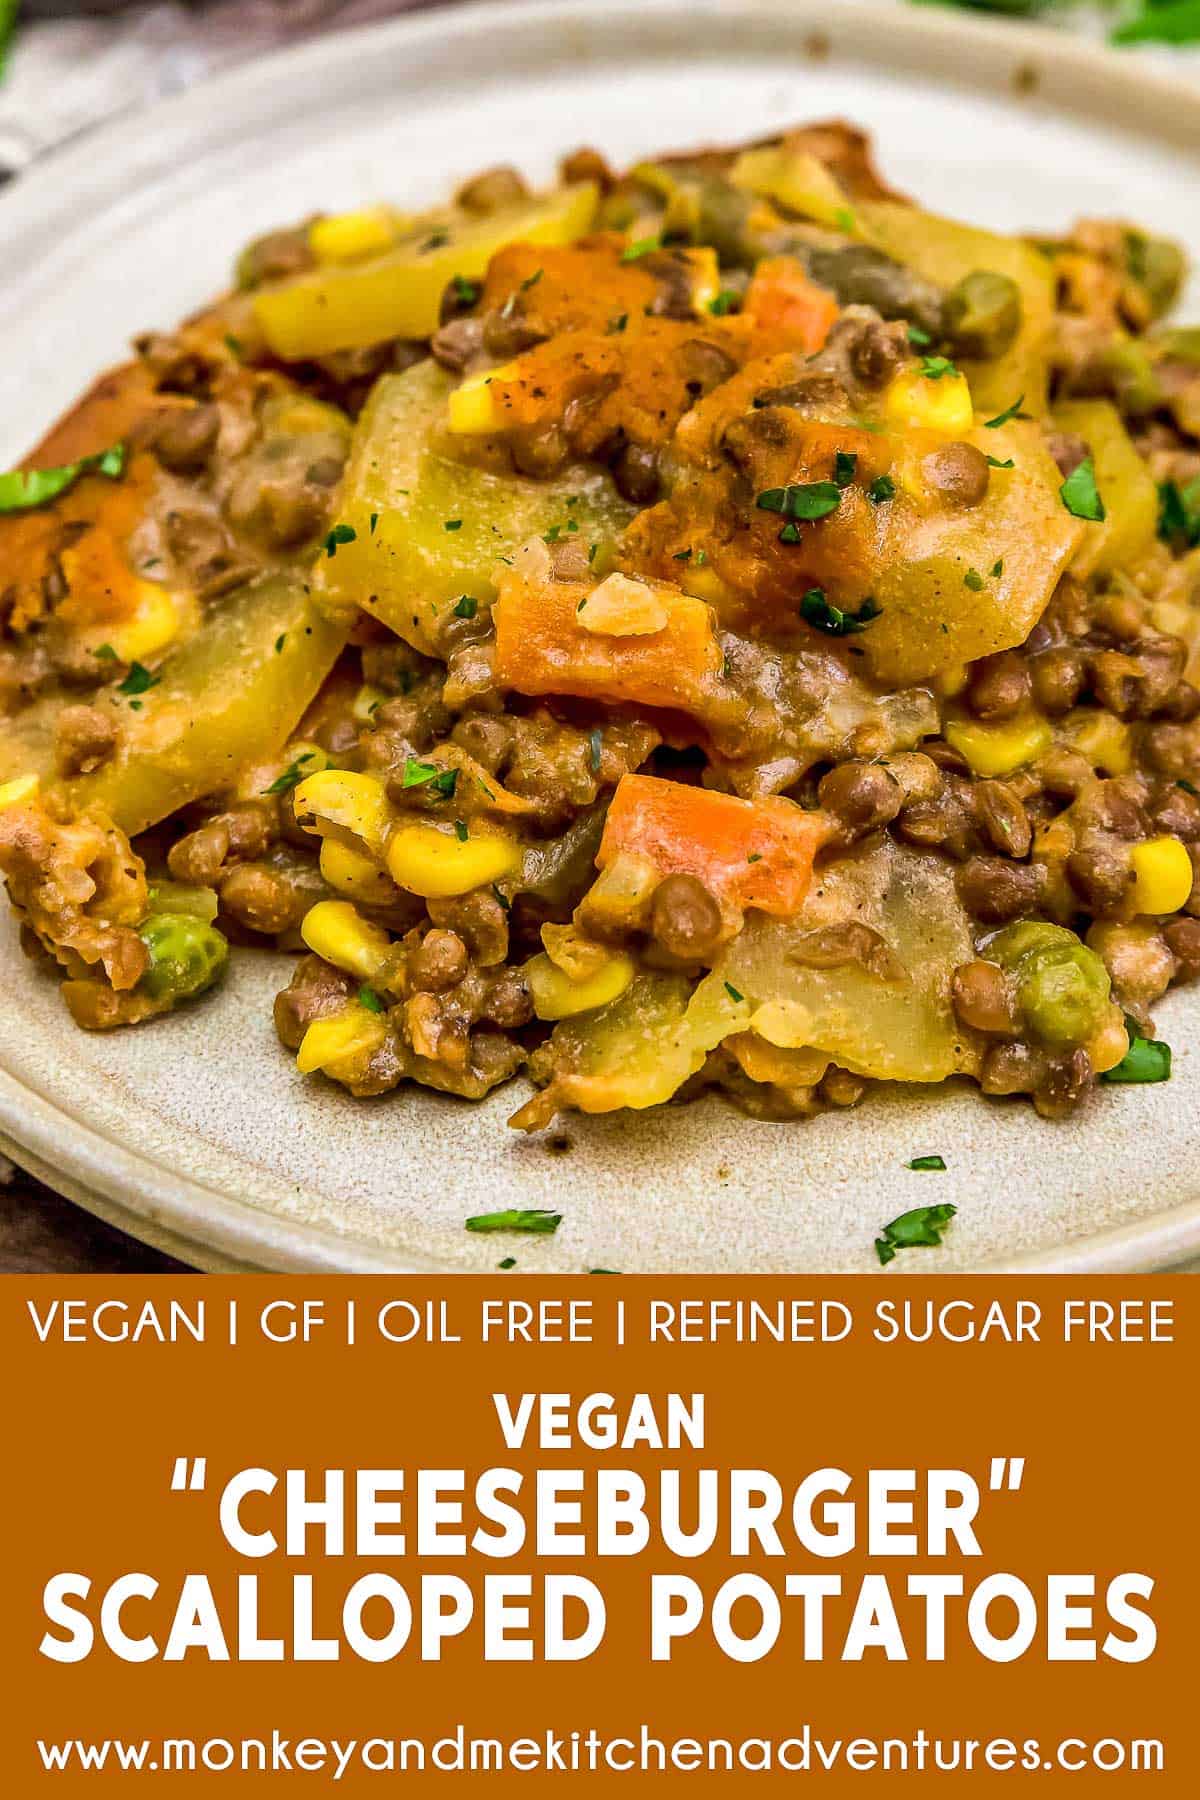 Vegan “Cheeseburger” Scalloped Potatoes with text description